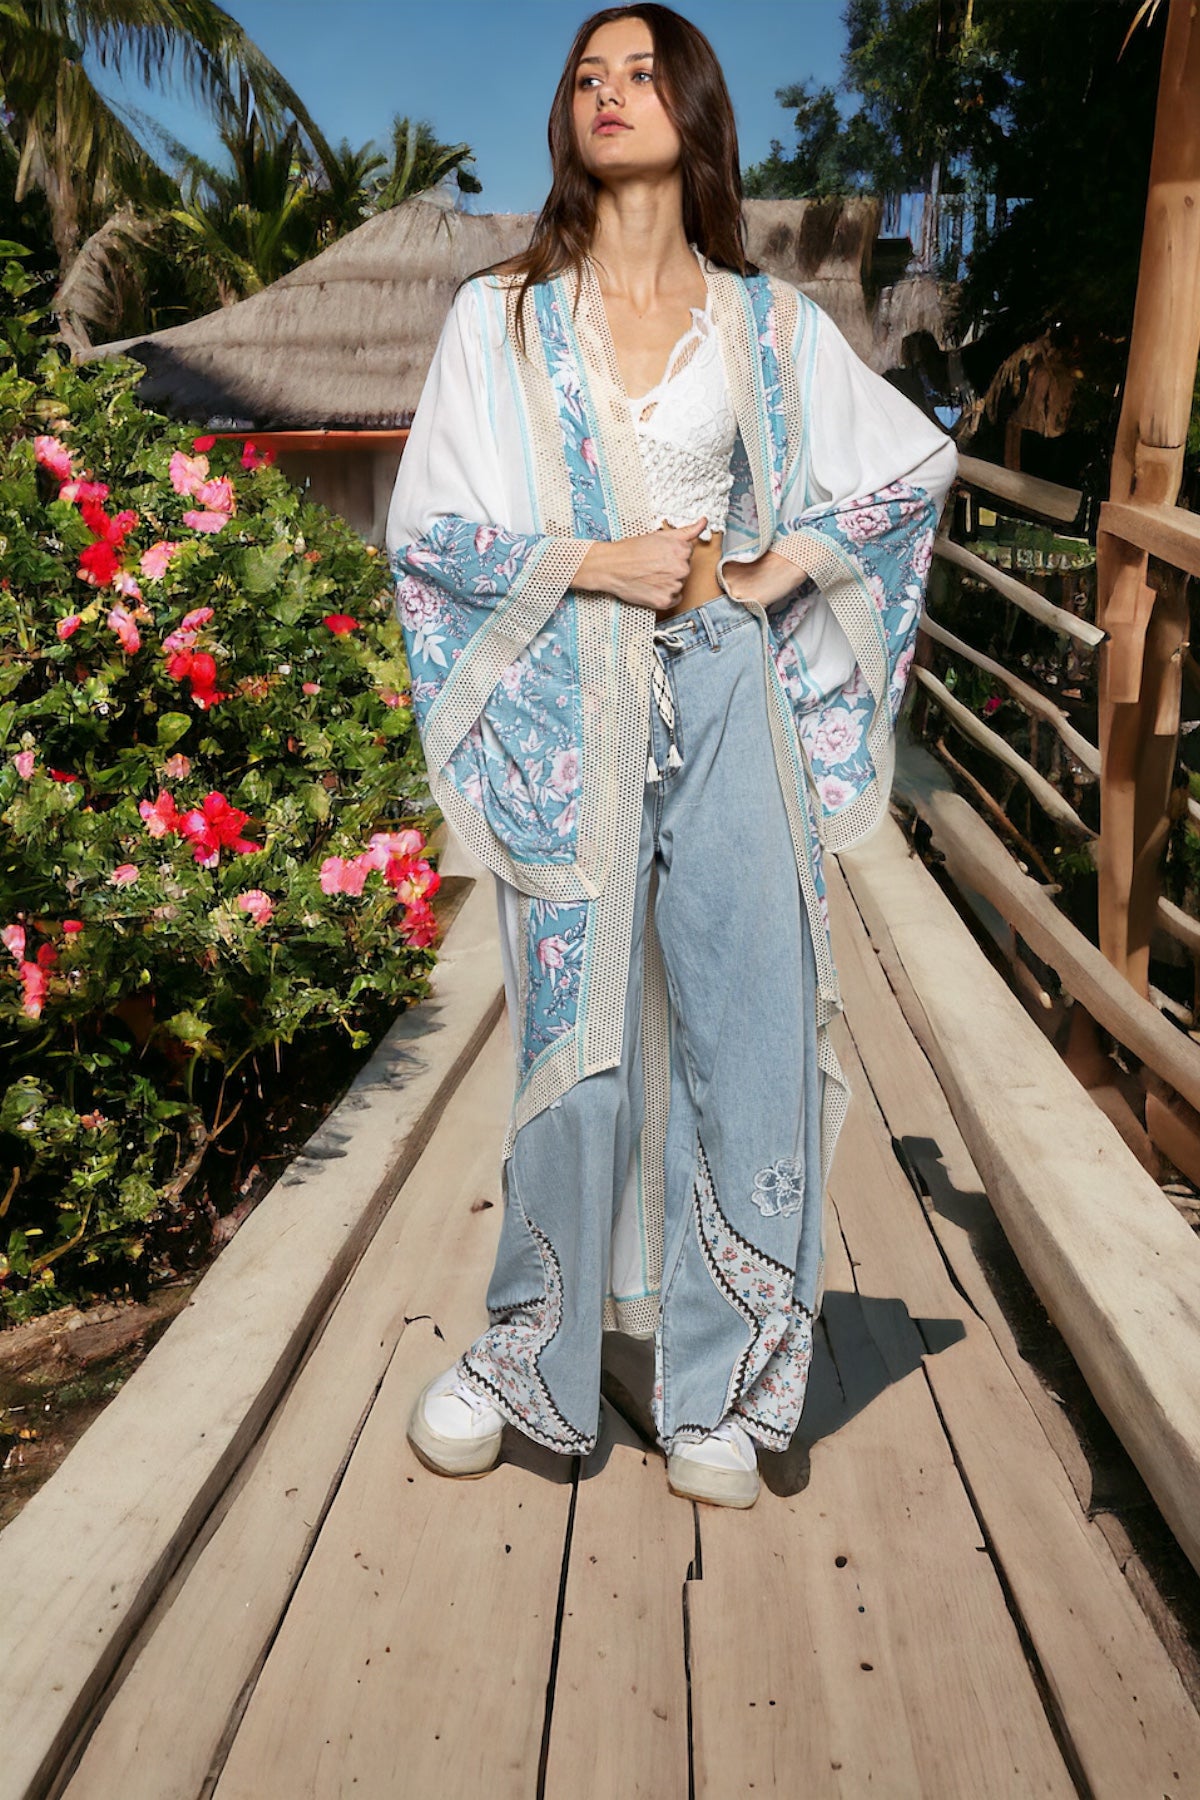 Dora Flower Mixed Print & Crochet Trim Kimono